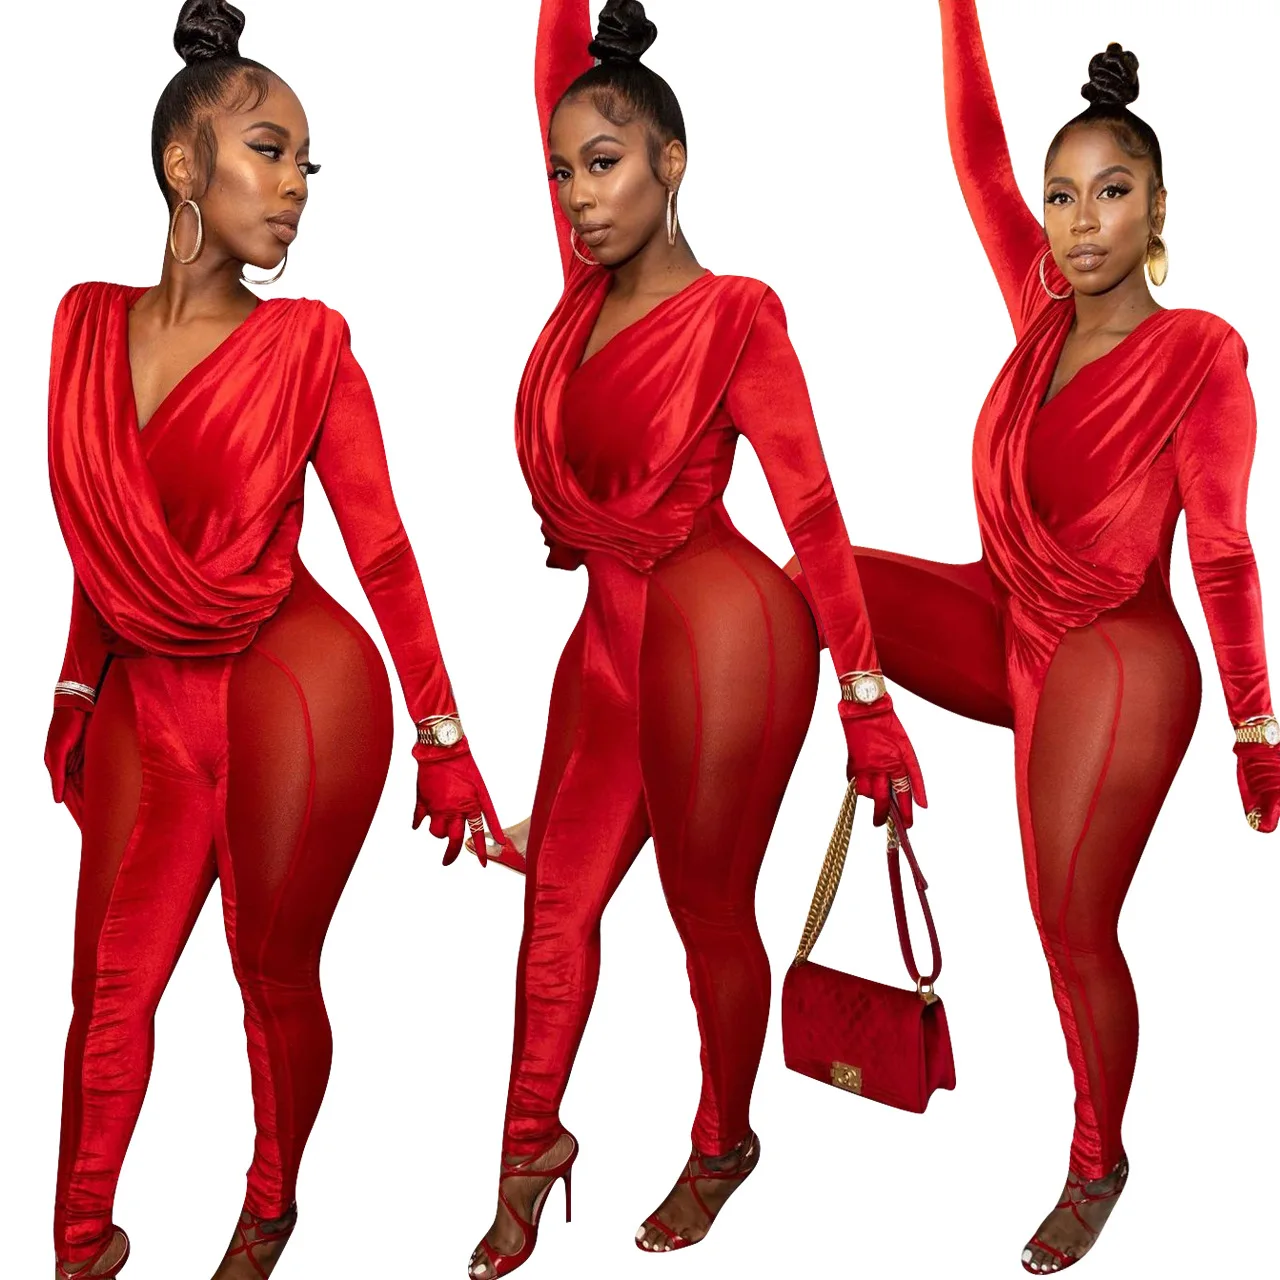 

2022 New Women Spring Long Sleeve Spliced Velvet Mesh Romper Elegant Hot Sale Red Bodysuit Skinny See Through Pant Jumpsuit, 2 colors